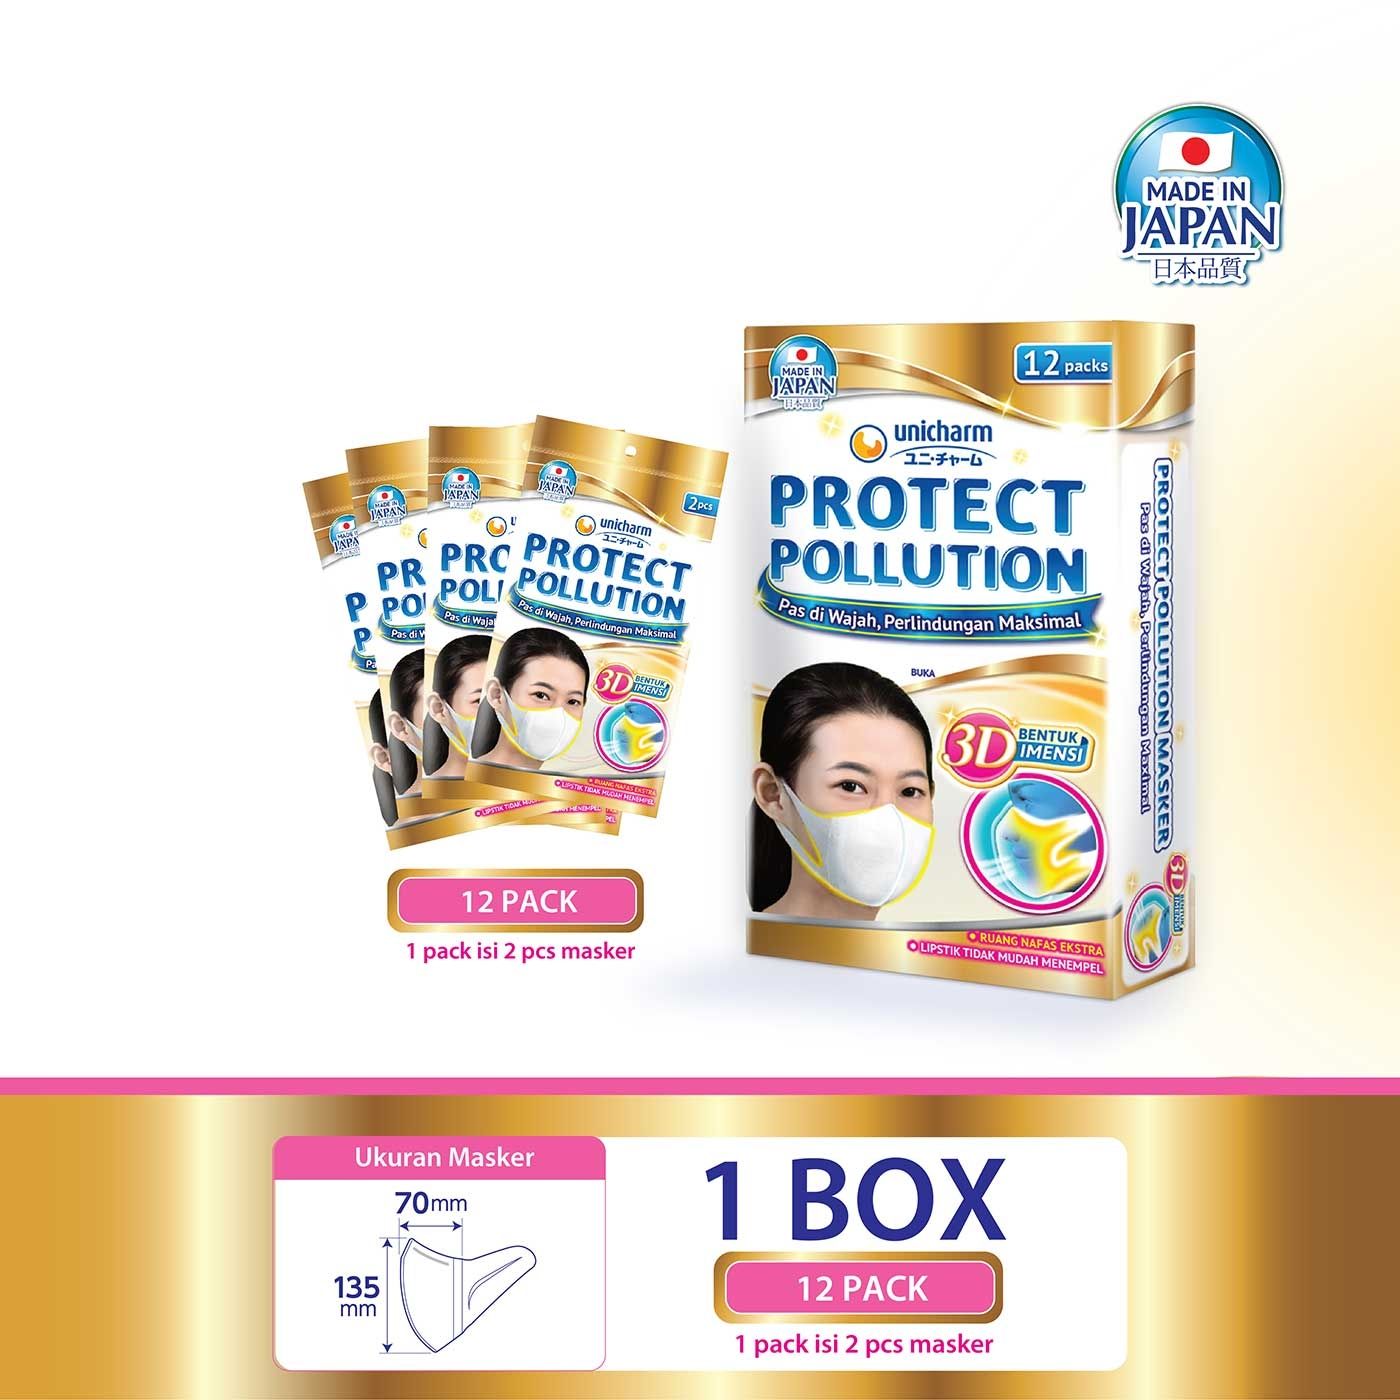 Unicharm Protect Polution Masker 3D 2 Pcs - Box Isi 12 Pack - 1